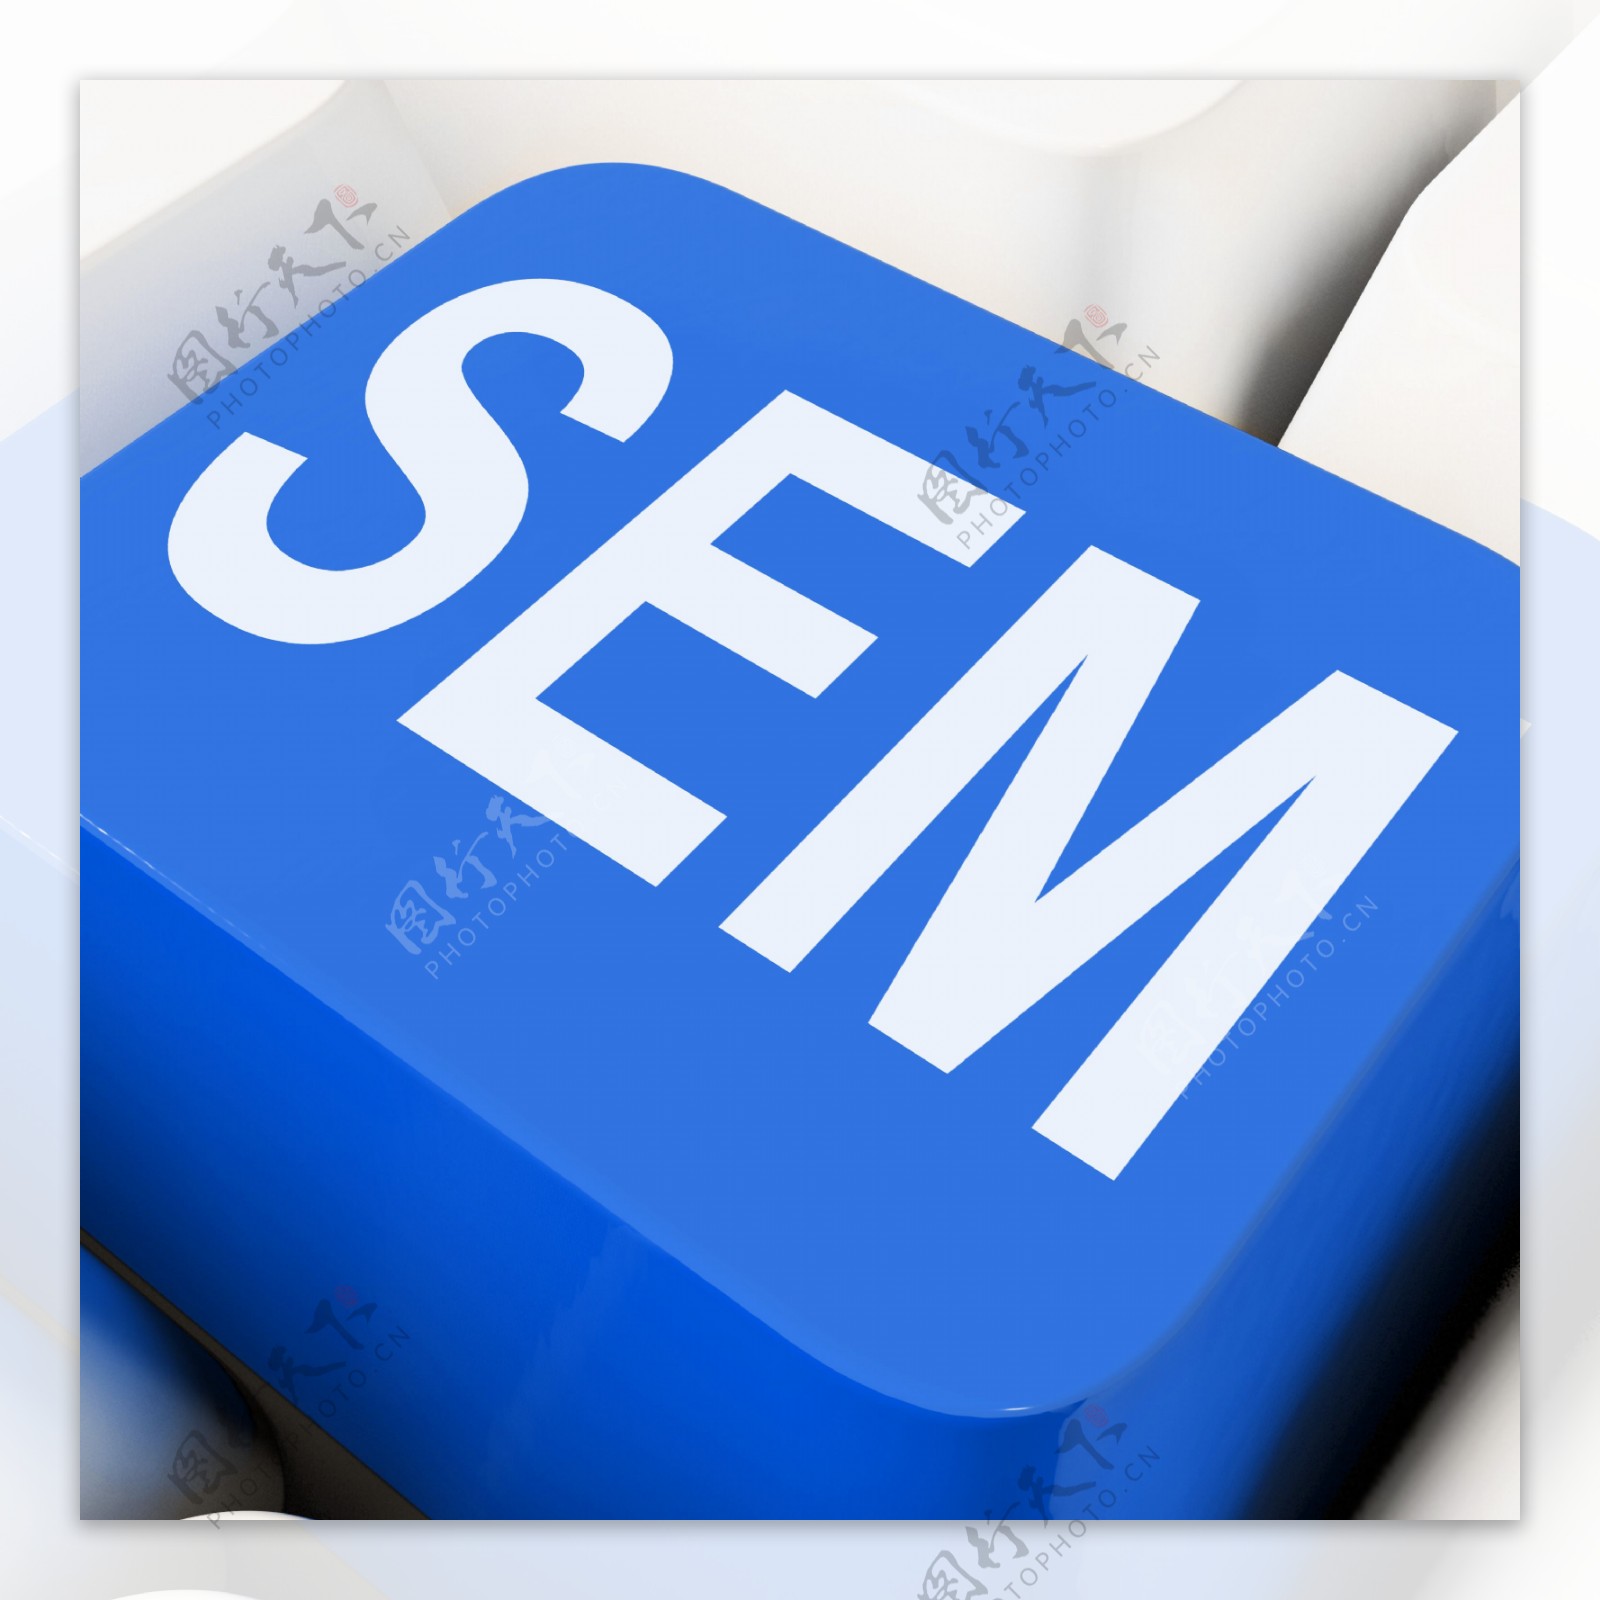 SEM意思是搜索引擎营销的关键